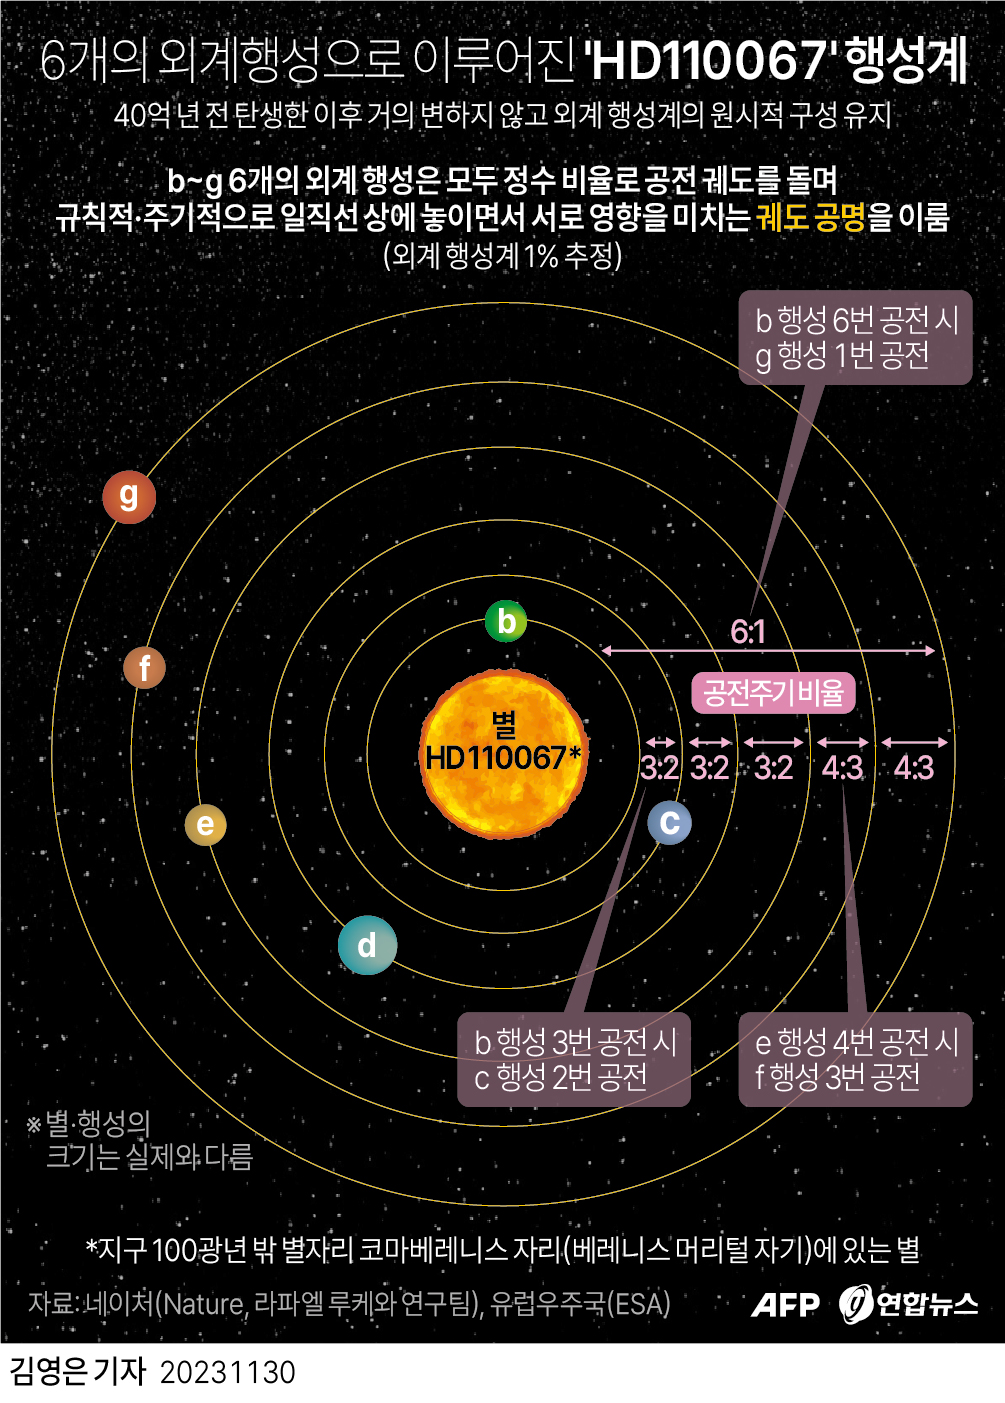 [그래픽] 6개의 외계행성으로 이루어진 'HD110067' 행성계